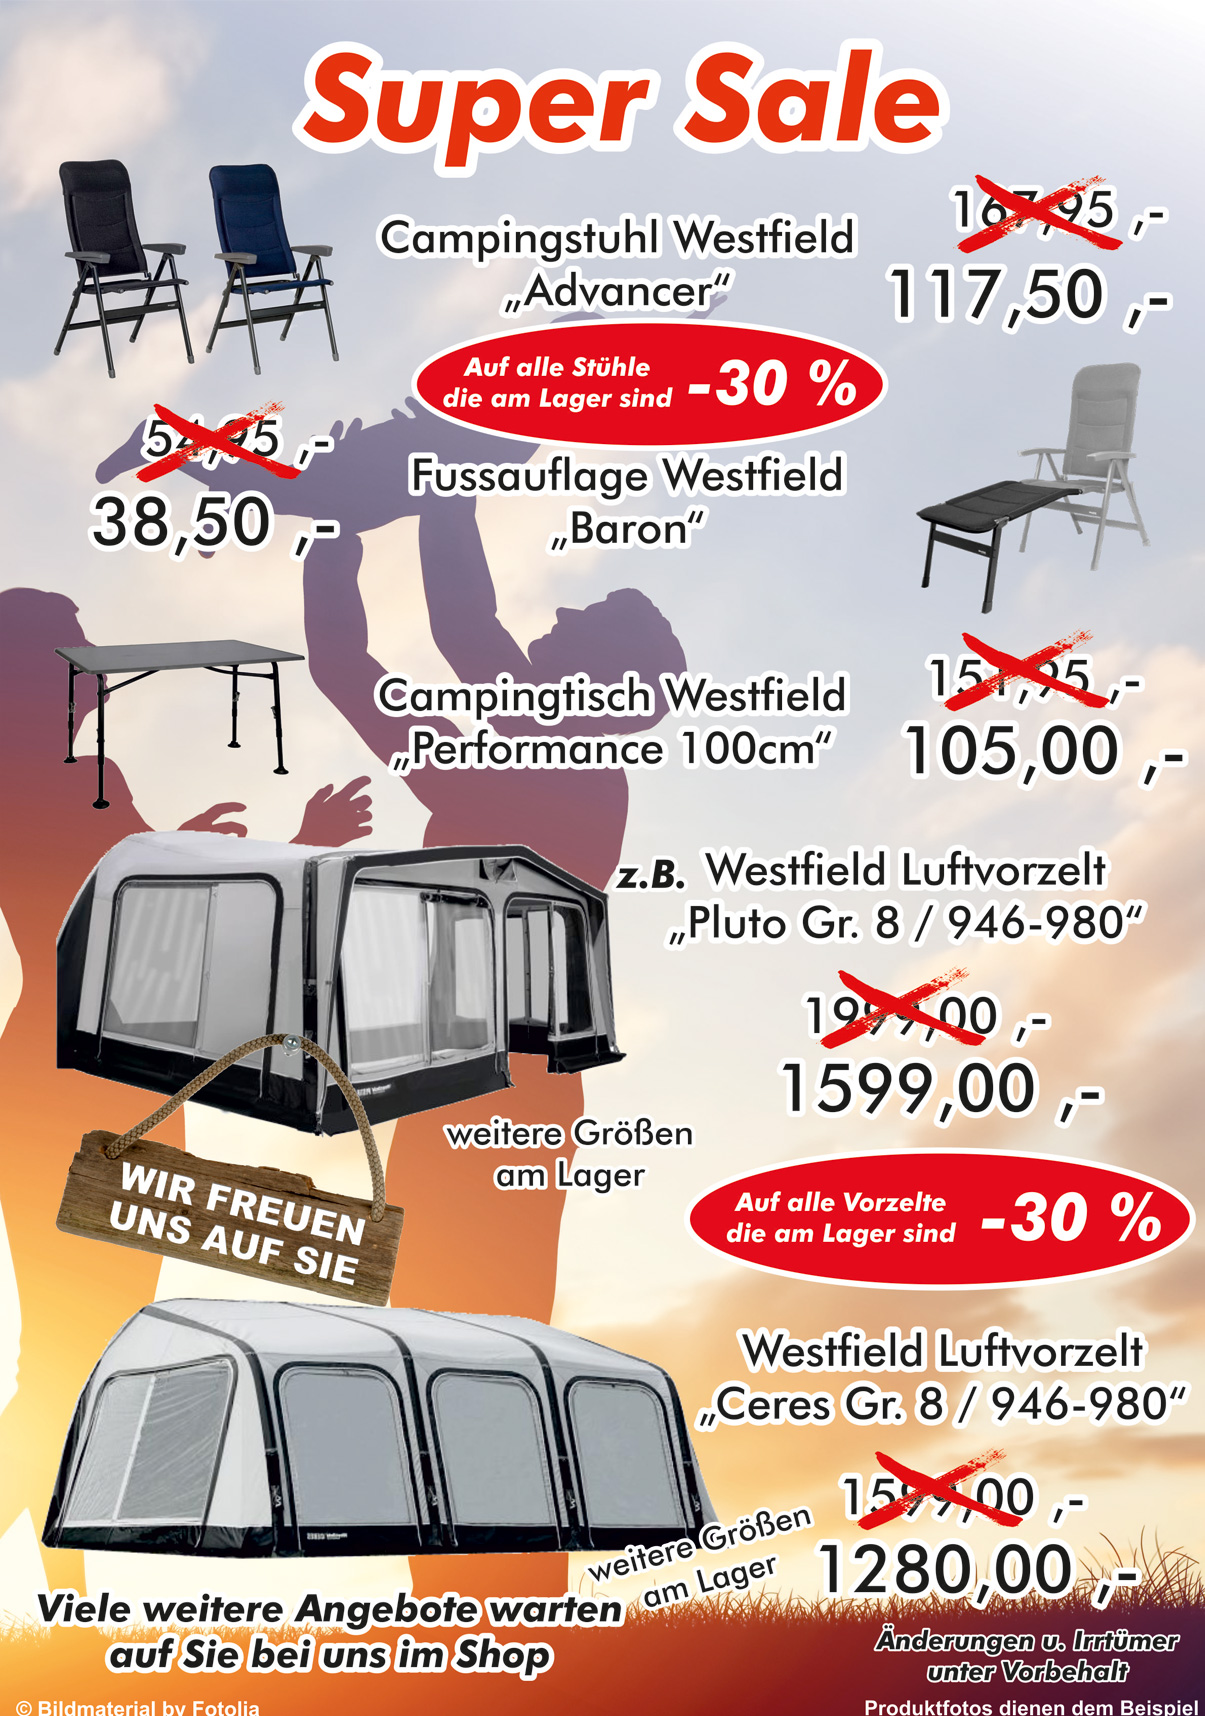 Camperhuus - Wohnwagen, Wohnmobile und Camper in Norddeutschland